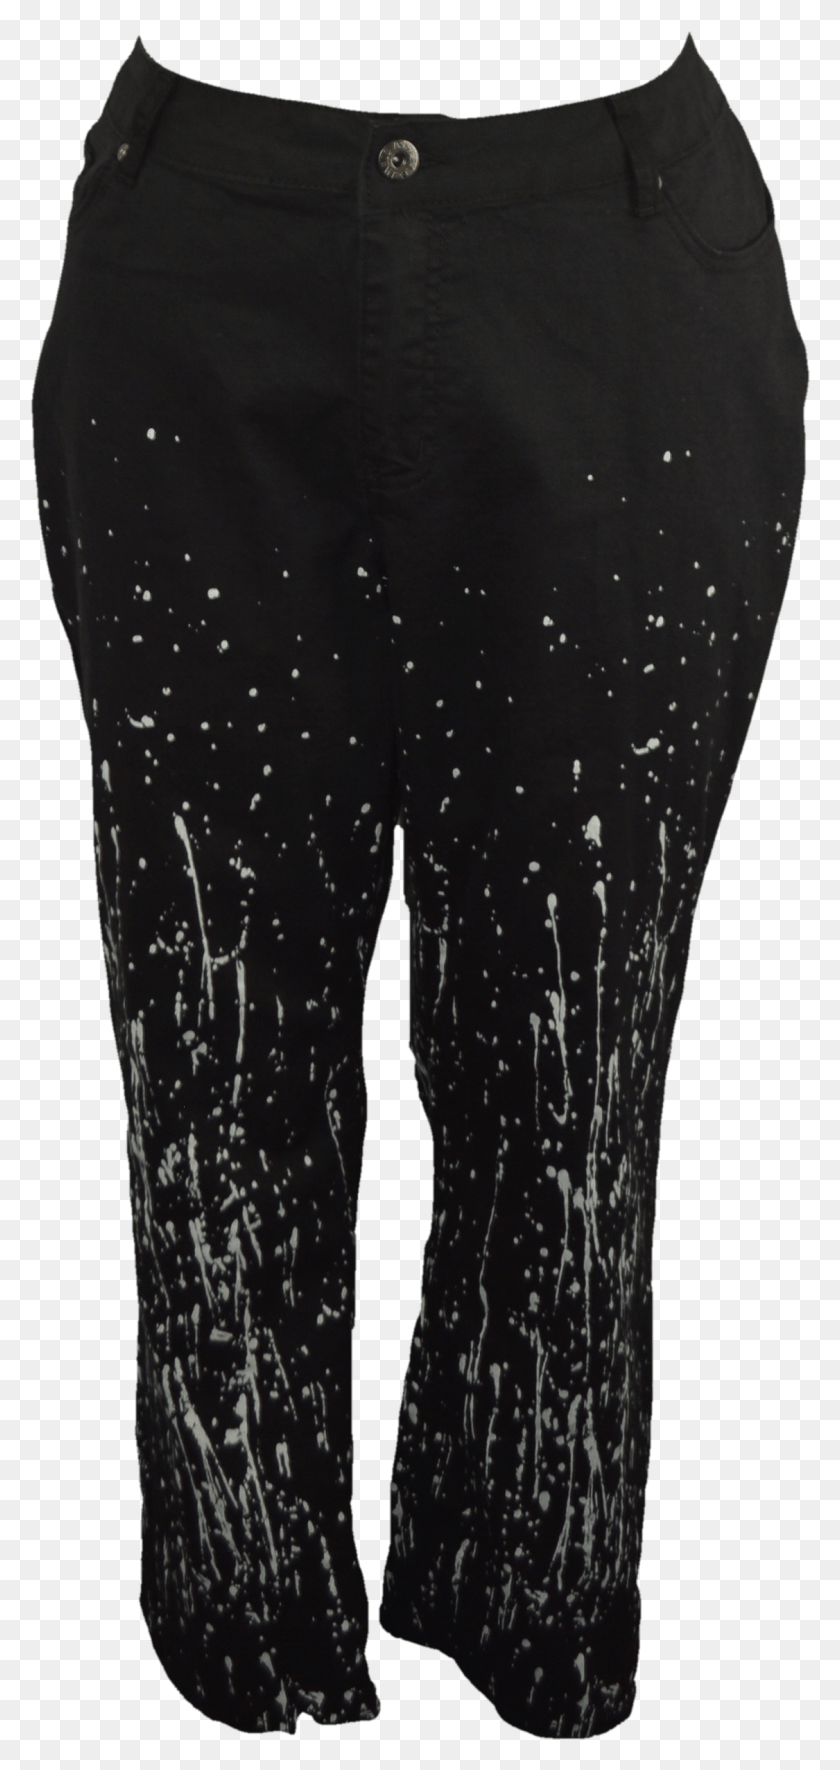 1125x2467 Pantalones Vaqueros Negros Con Diseño De Salpicadura De Pintura Blanca Por Ashley Leggings, Pantalones Cortos, Ropa, Vestimenta Hd Png